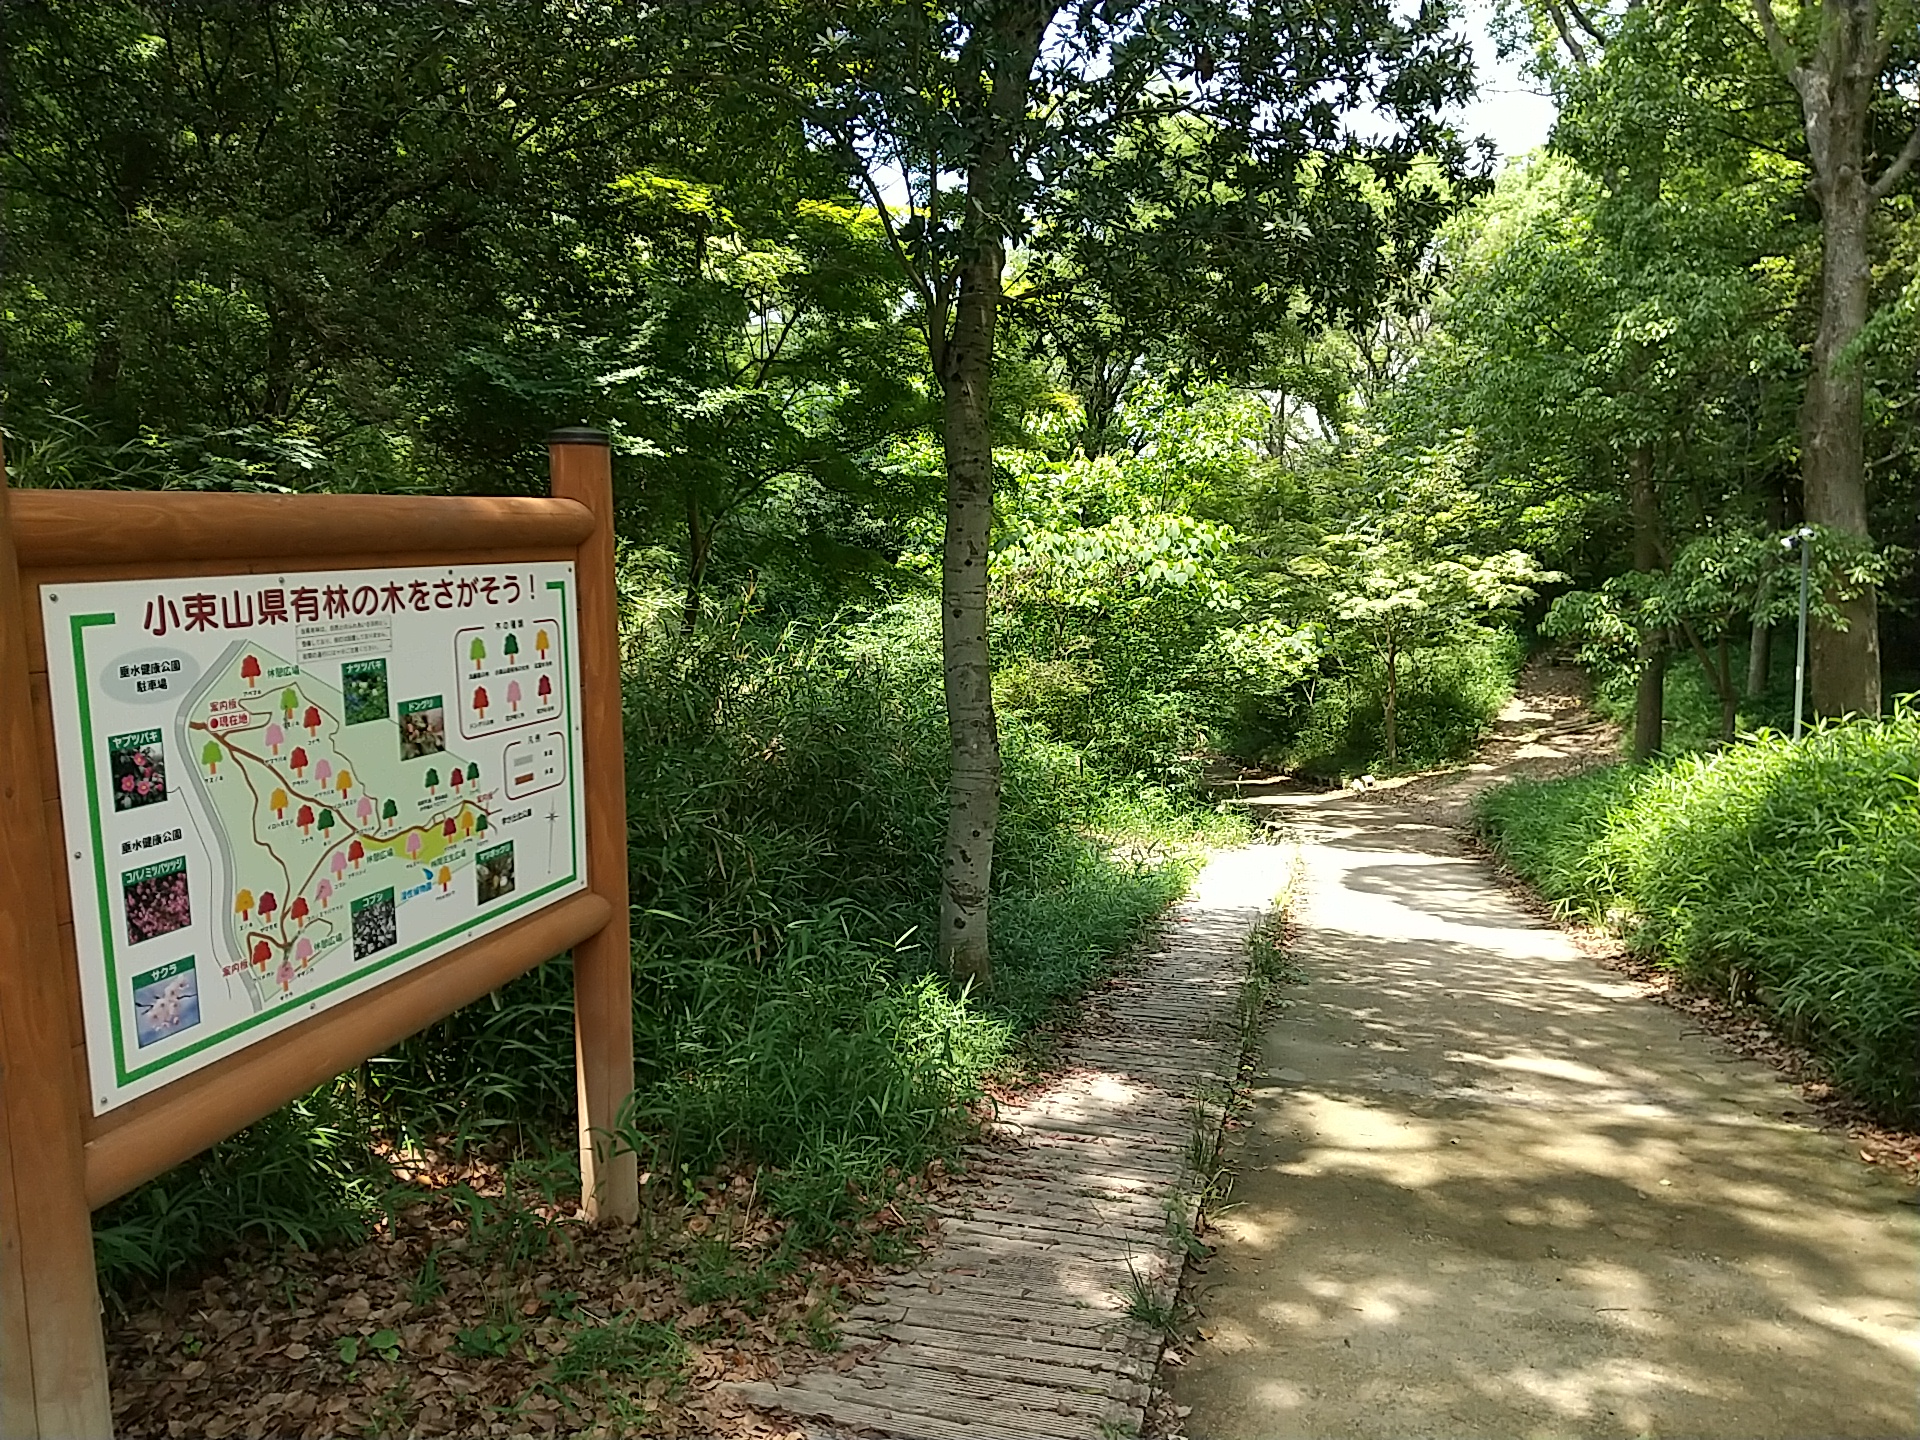 緑あふれる小束山県有林の遊歩道と看板